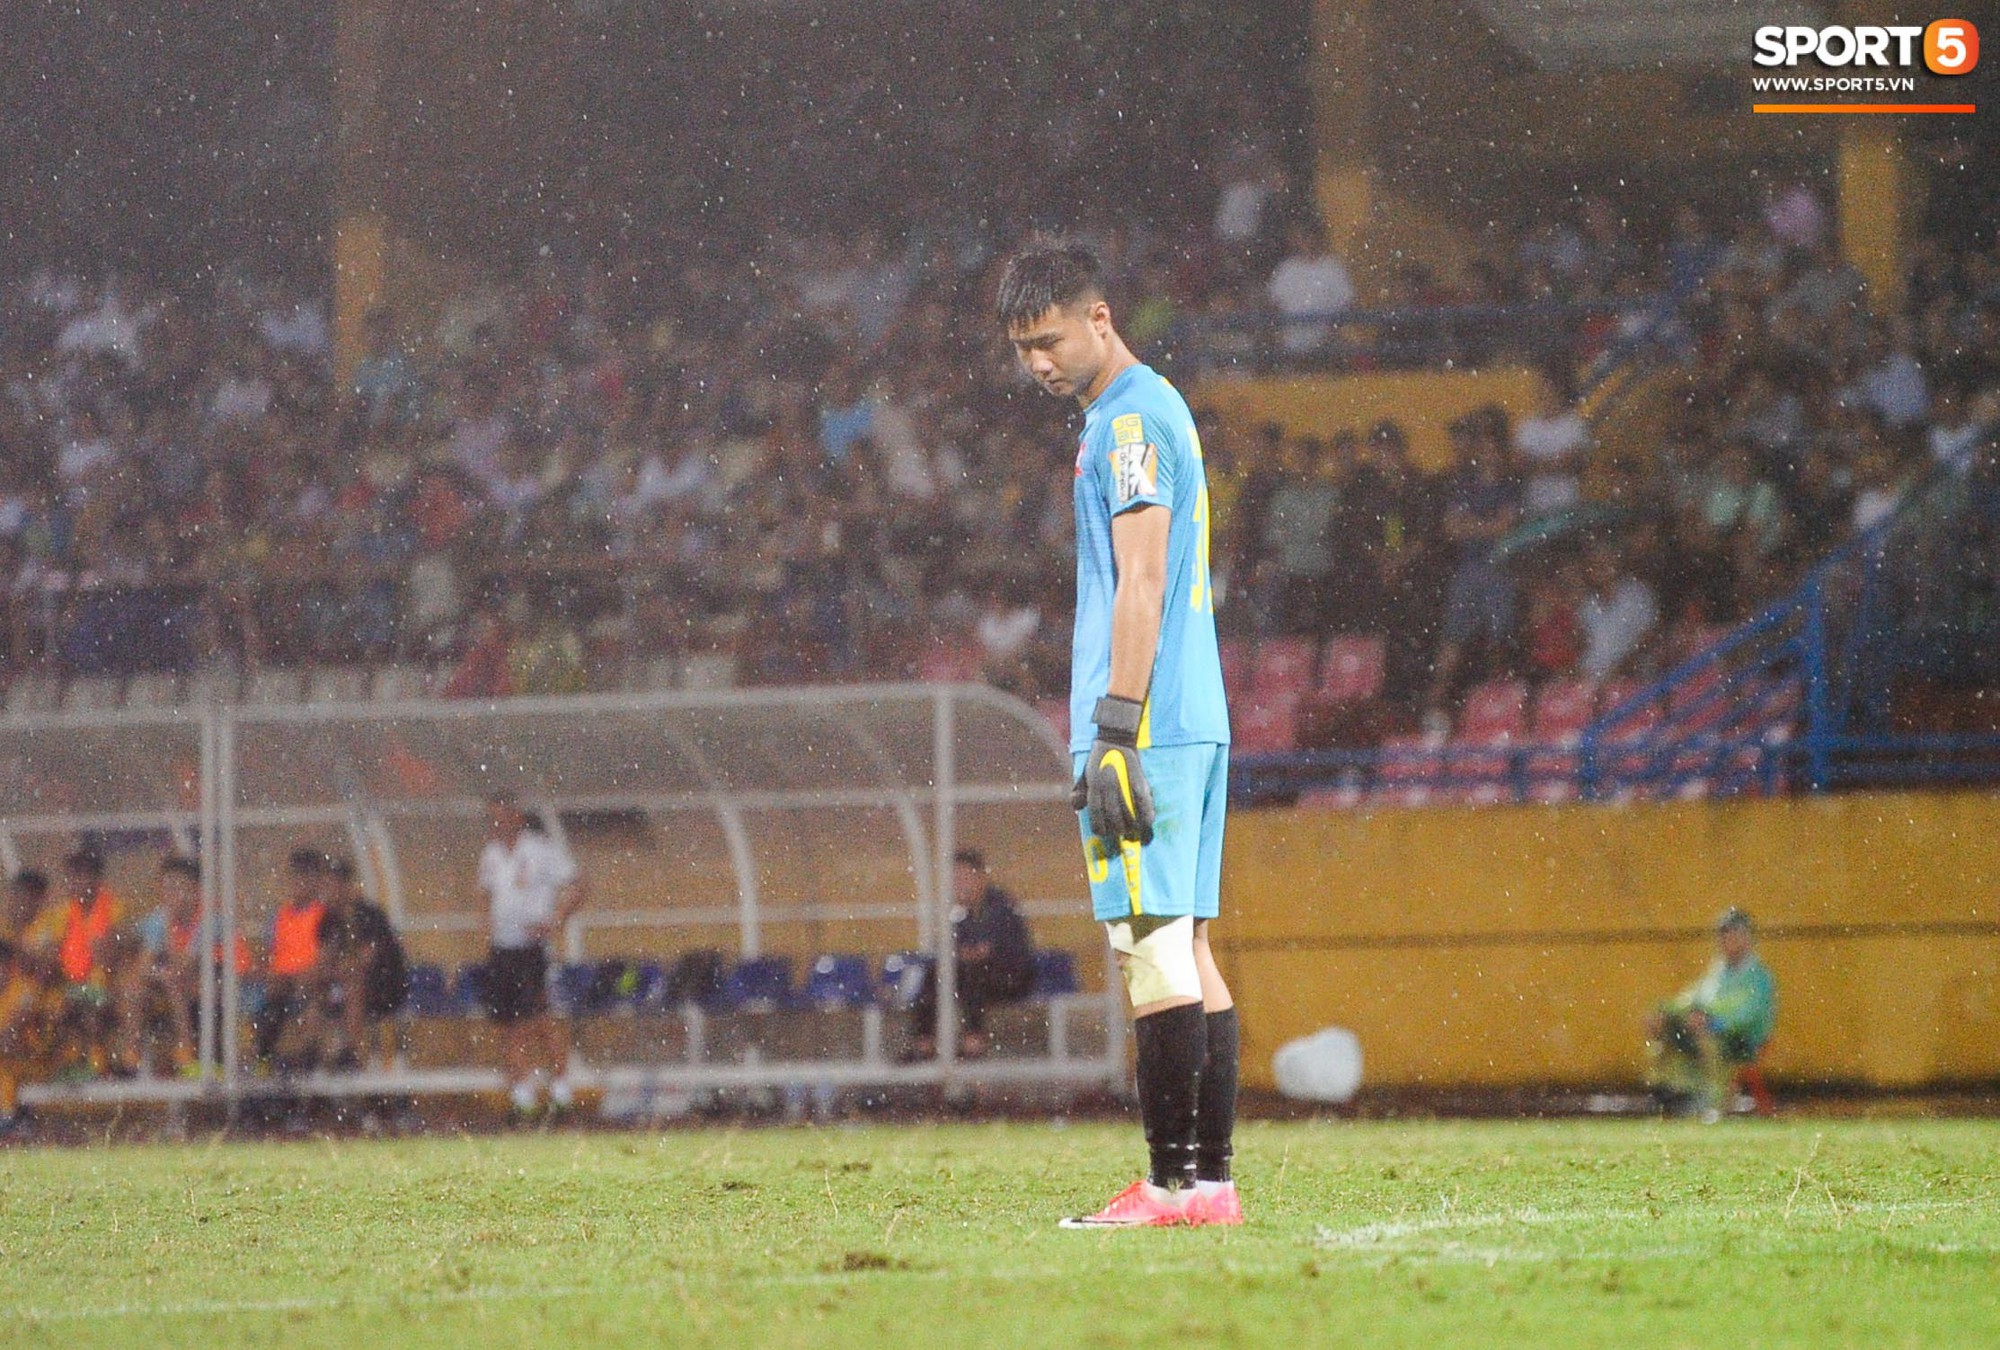 Thủ môn trẻ tài năng của U23 Việt Nam nhận lời cảnh báo sau trận thuỷ chiến trên sân Hàng Đẫy - Ảnh 1.